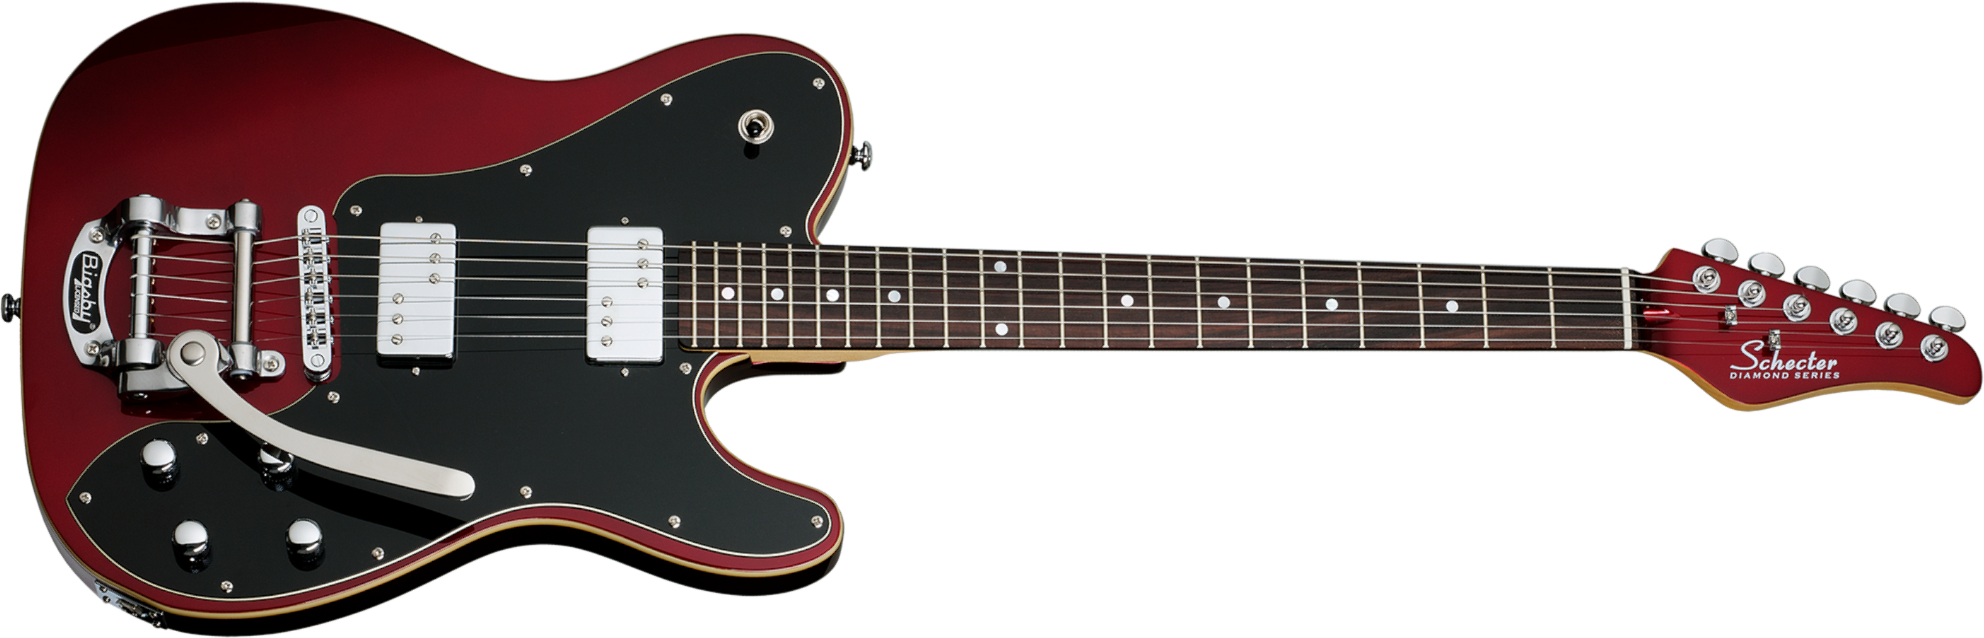 Schecter Pt Fastback Ii B Bigsby 2h Trem Bigsby Rw - Metallic Red - Televorm elektrische gitaar - Main picture